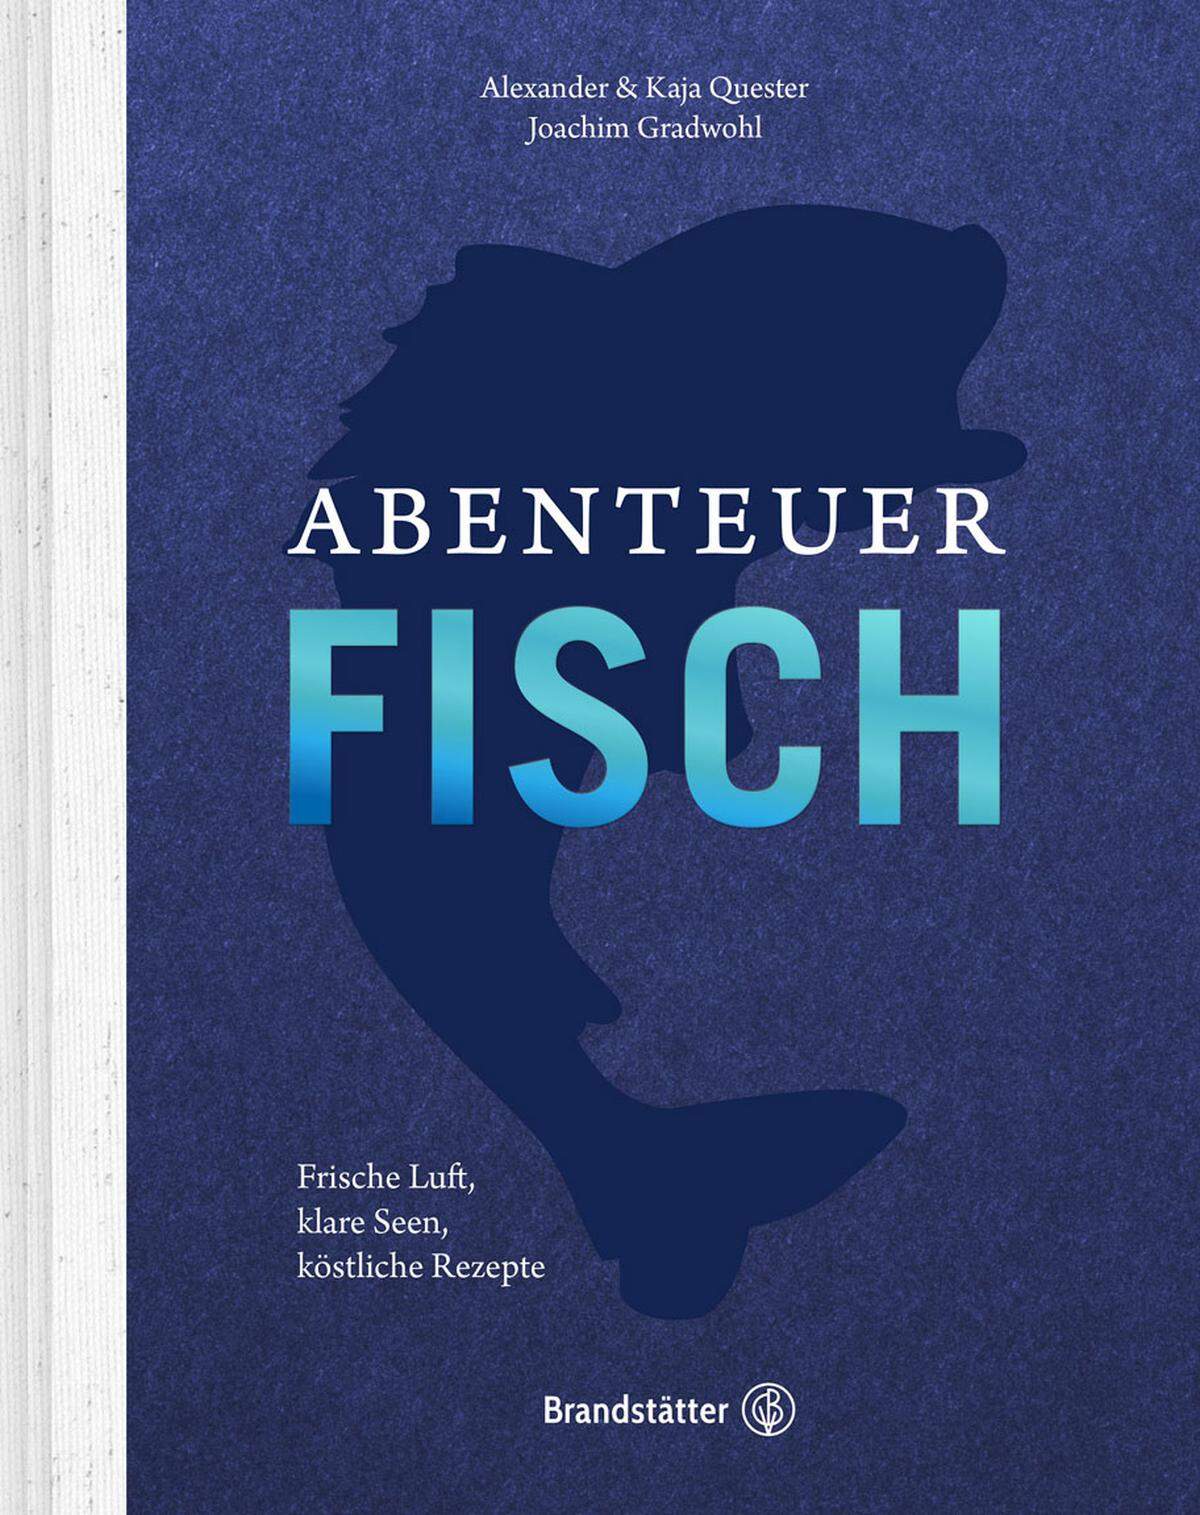 Alexander und Kaja Quester haben für ihr Fischkochbuch Joachim Gradwohl engagiert, der Rezepte wie Forellenstrudel, Saibling im Reisblatt oder Fisch-Frittata liefert. "Abenteuer Fisch", CBV, 30 Euro.